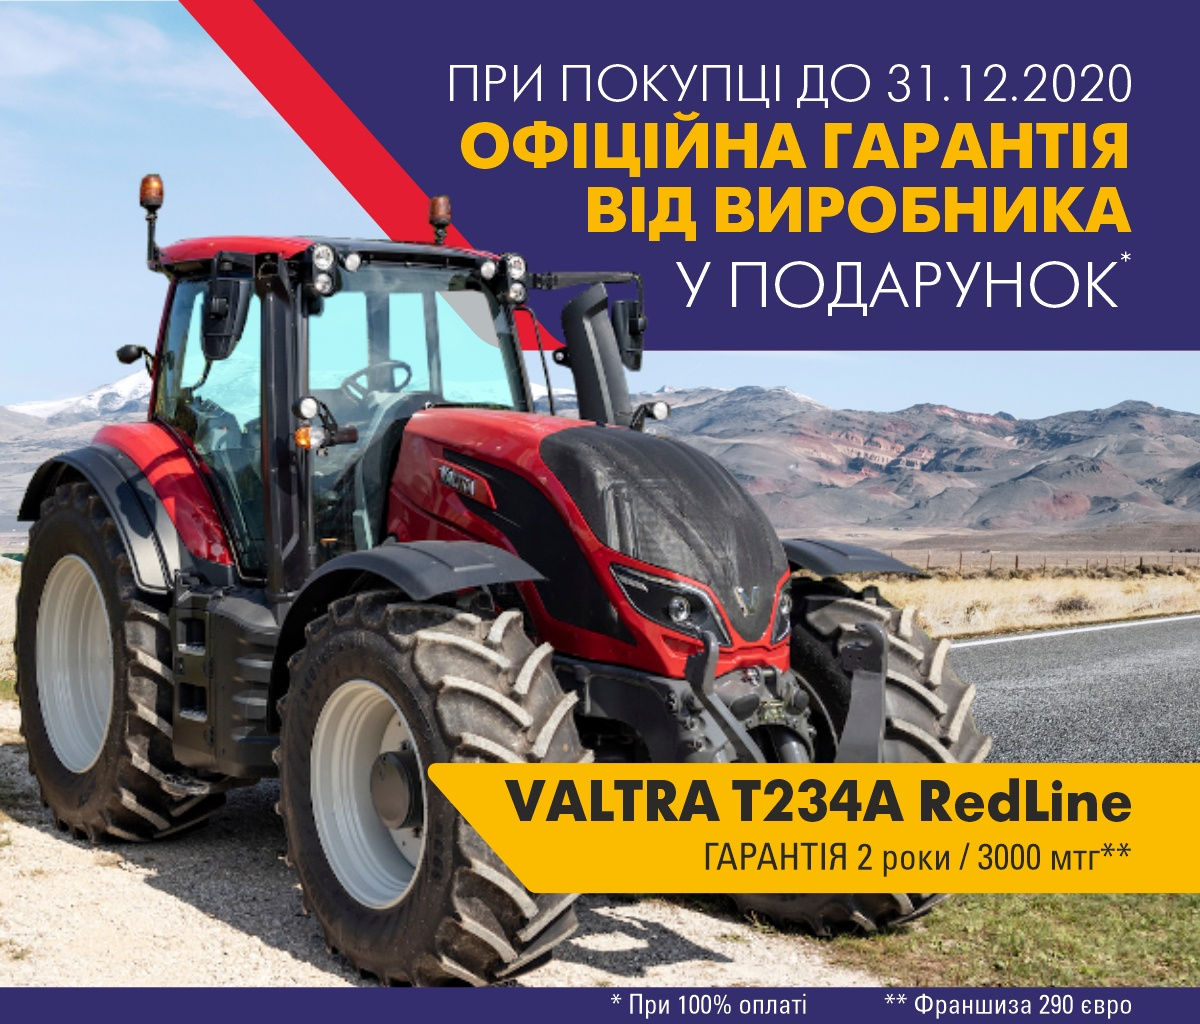 Офіційна гарантія від виробника 2 роки на Valtra T234A RedLine